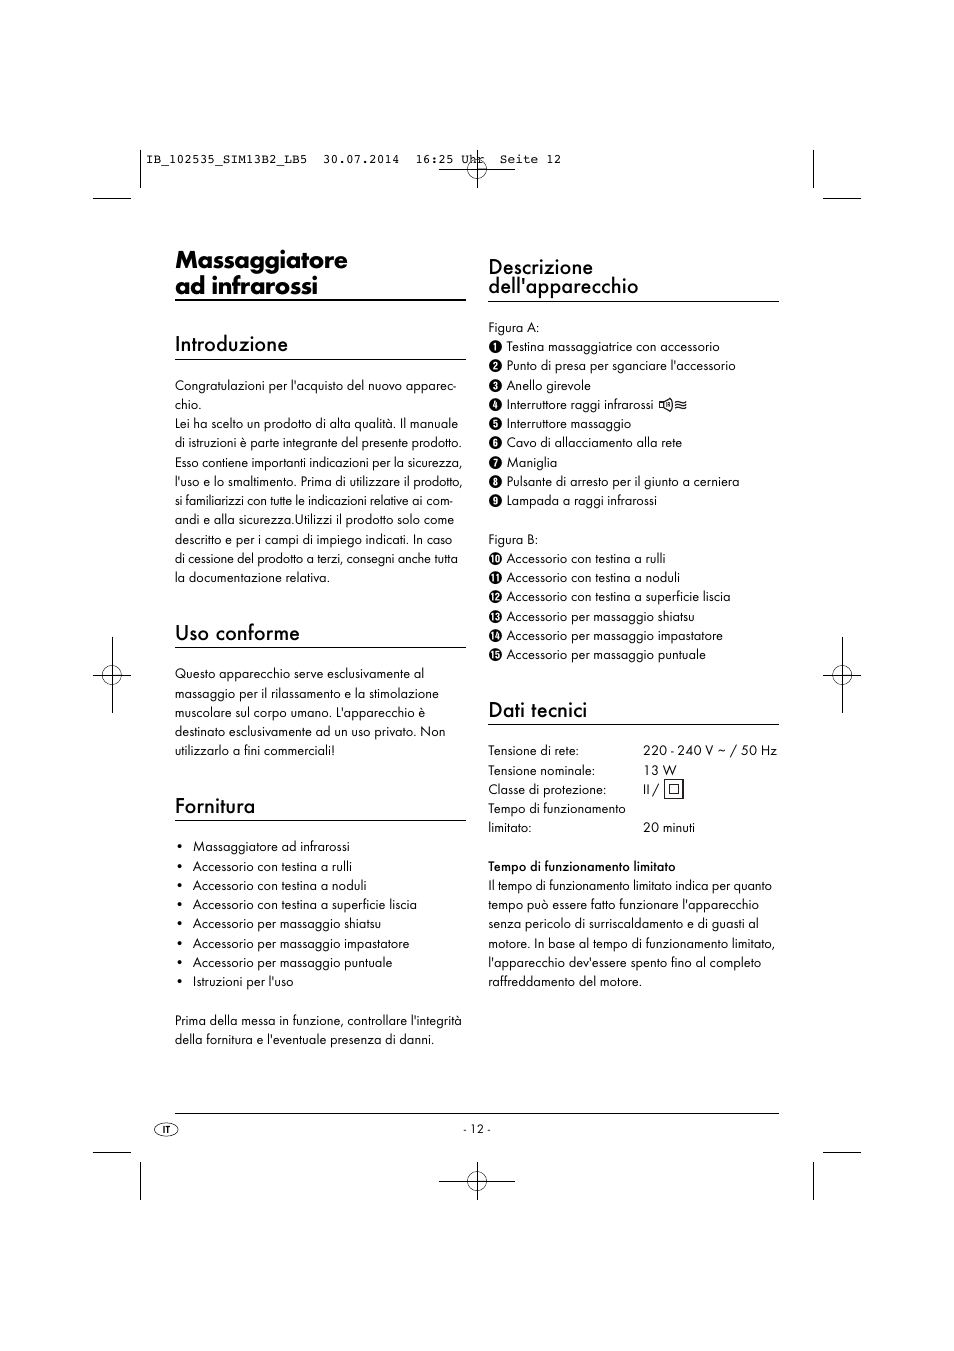 Massaggiatore ad infrarossi, Introduzione, Uso conforme | Silvercrest SIM  13 B2 User Manual | Page 15 / 43